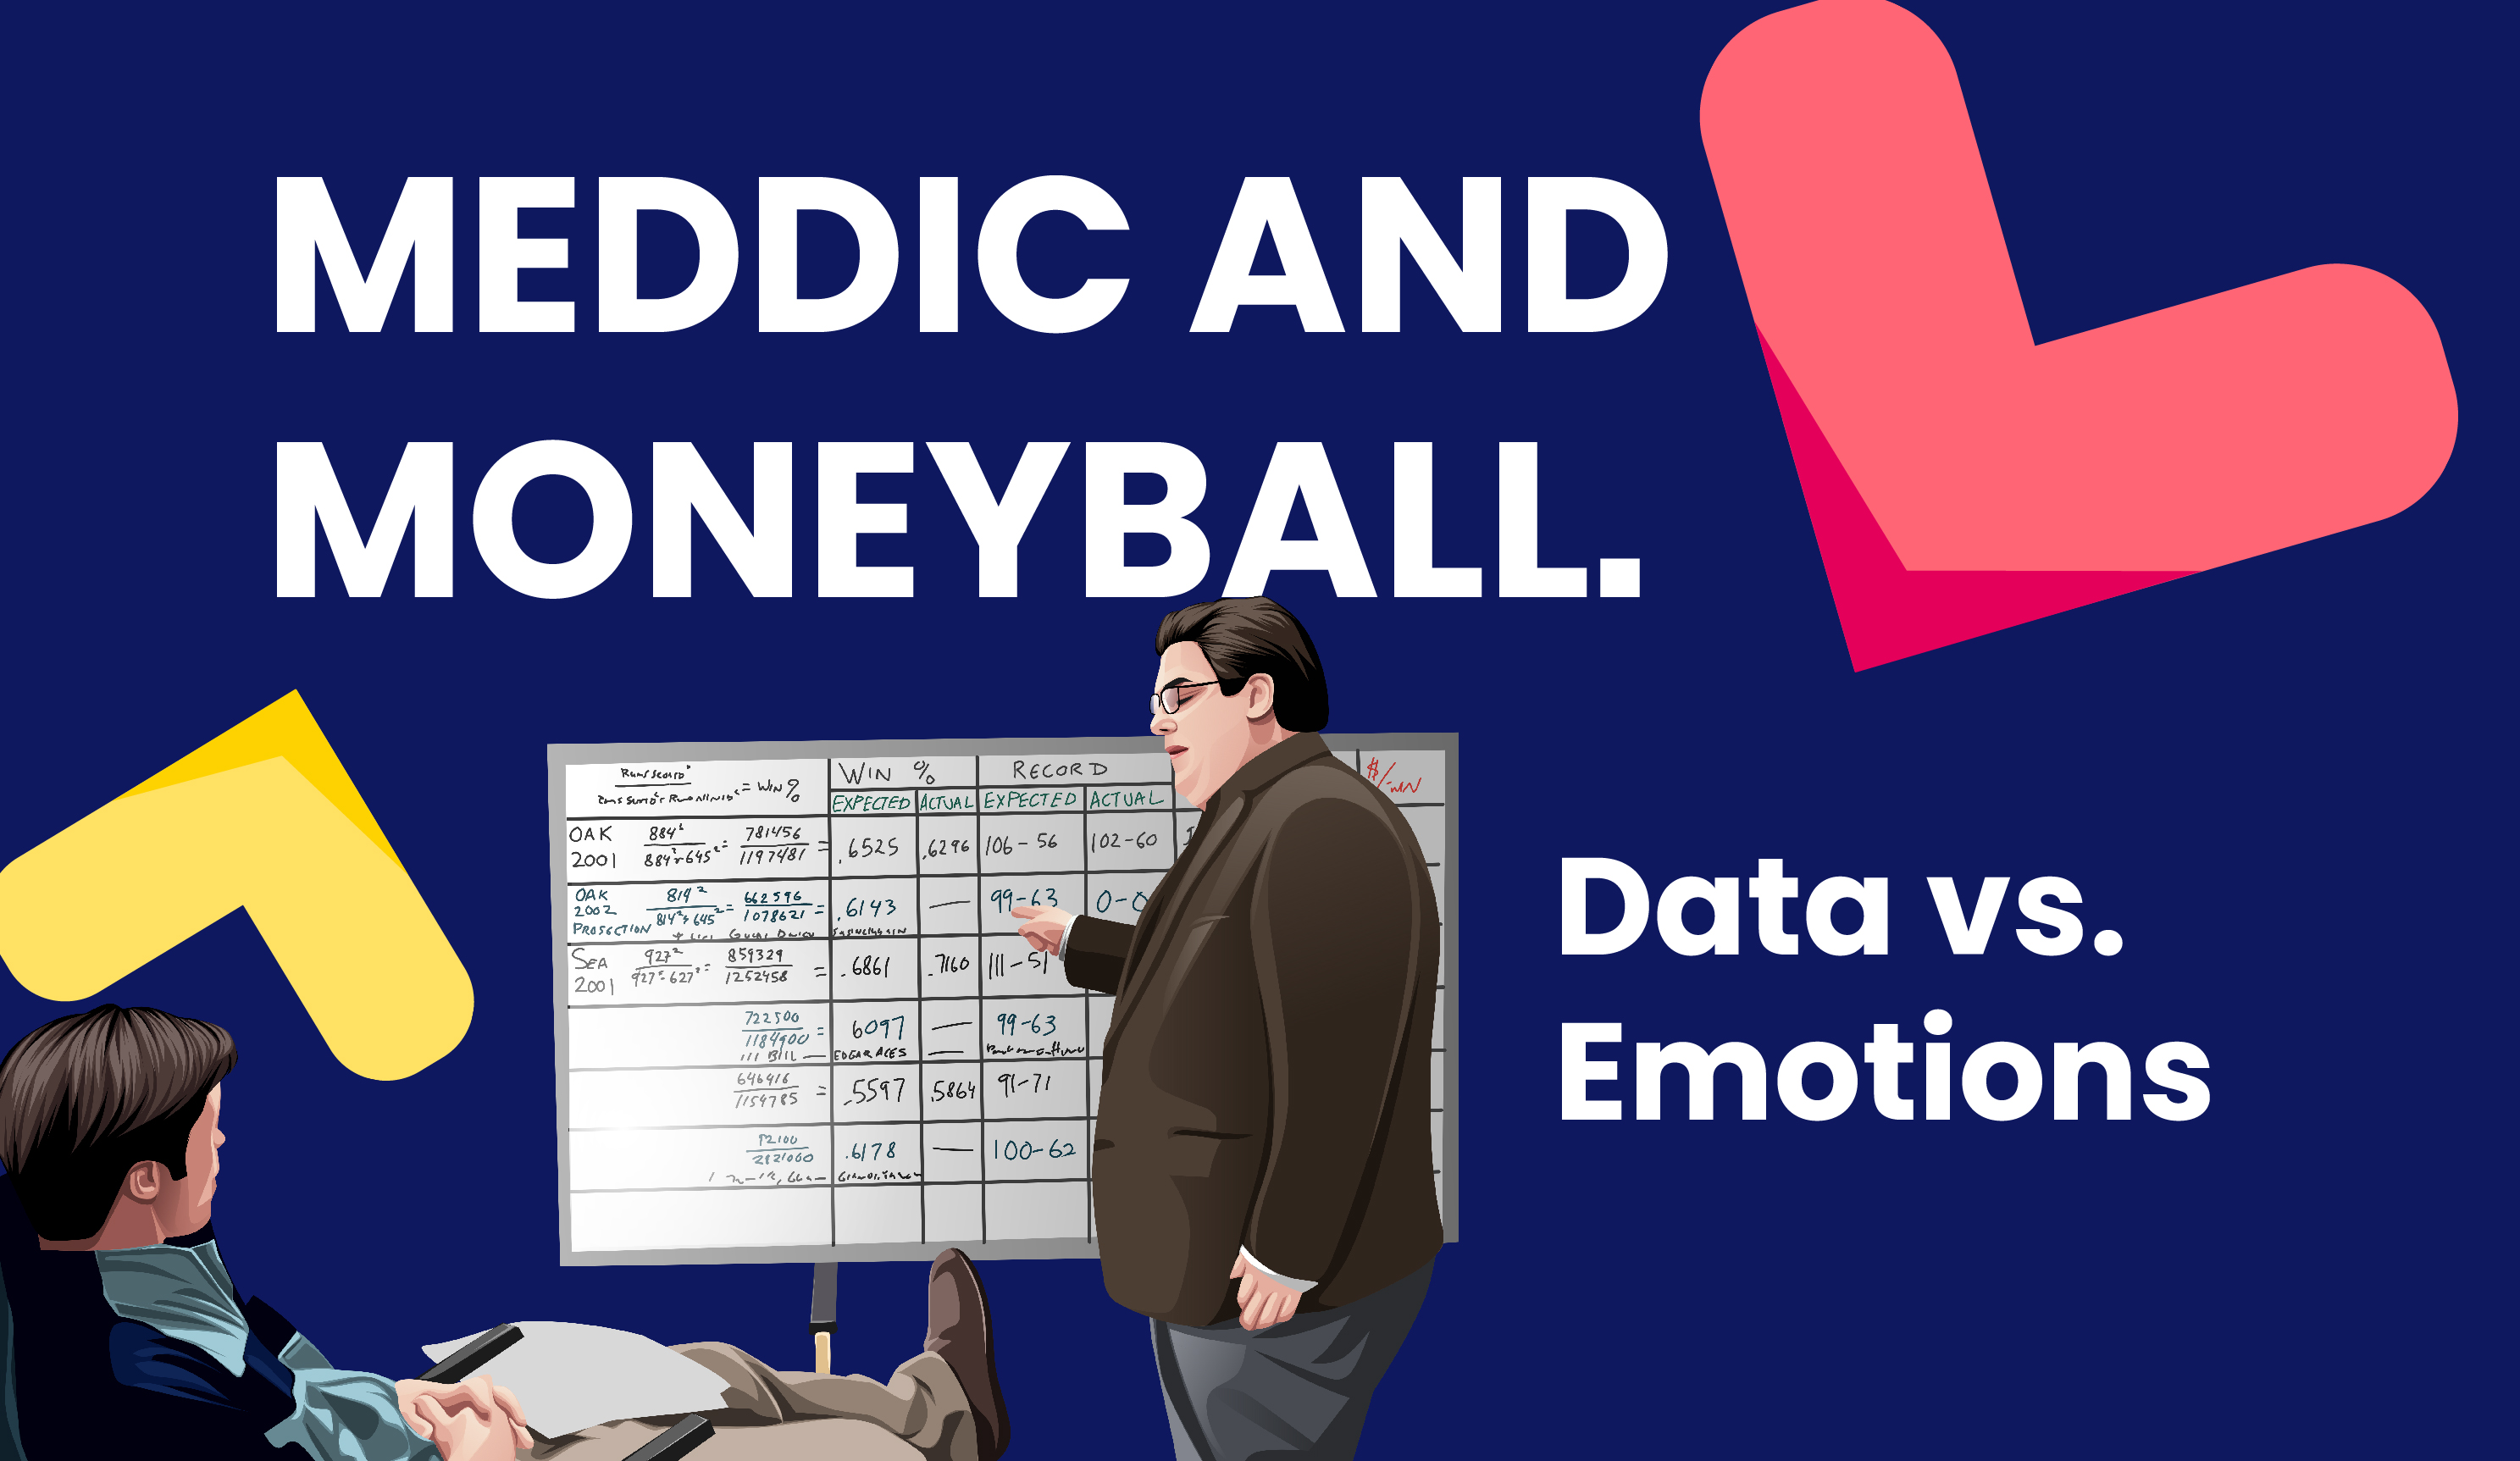 MEDDIC & Moneyball #1: Data vs Emotions